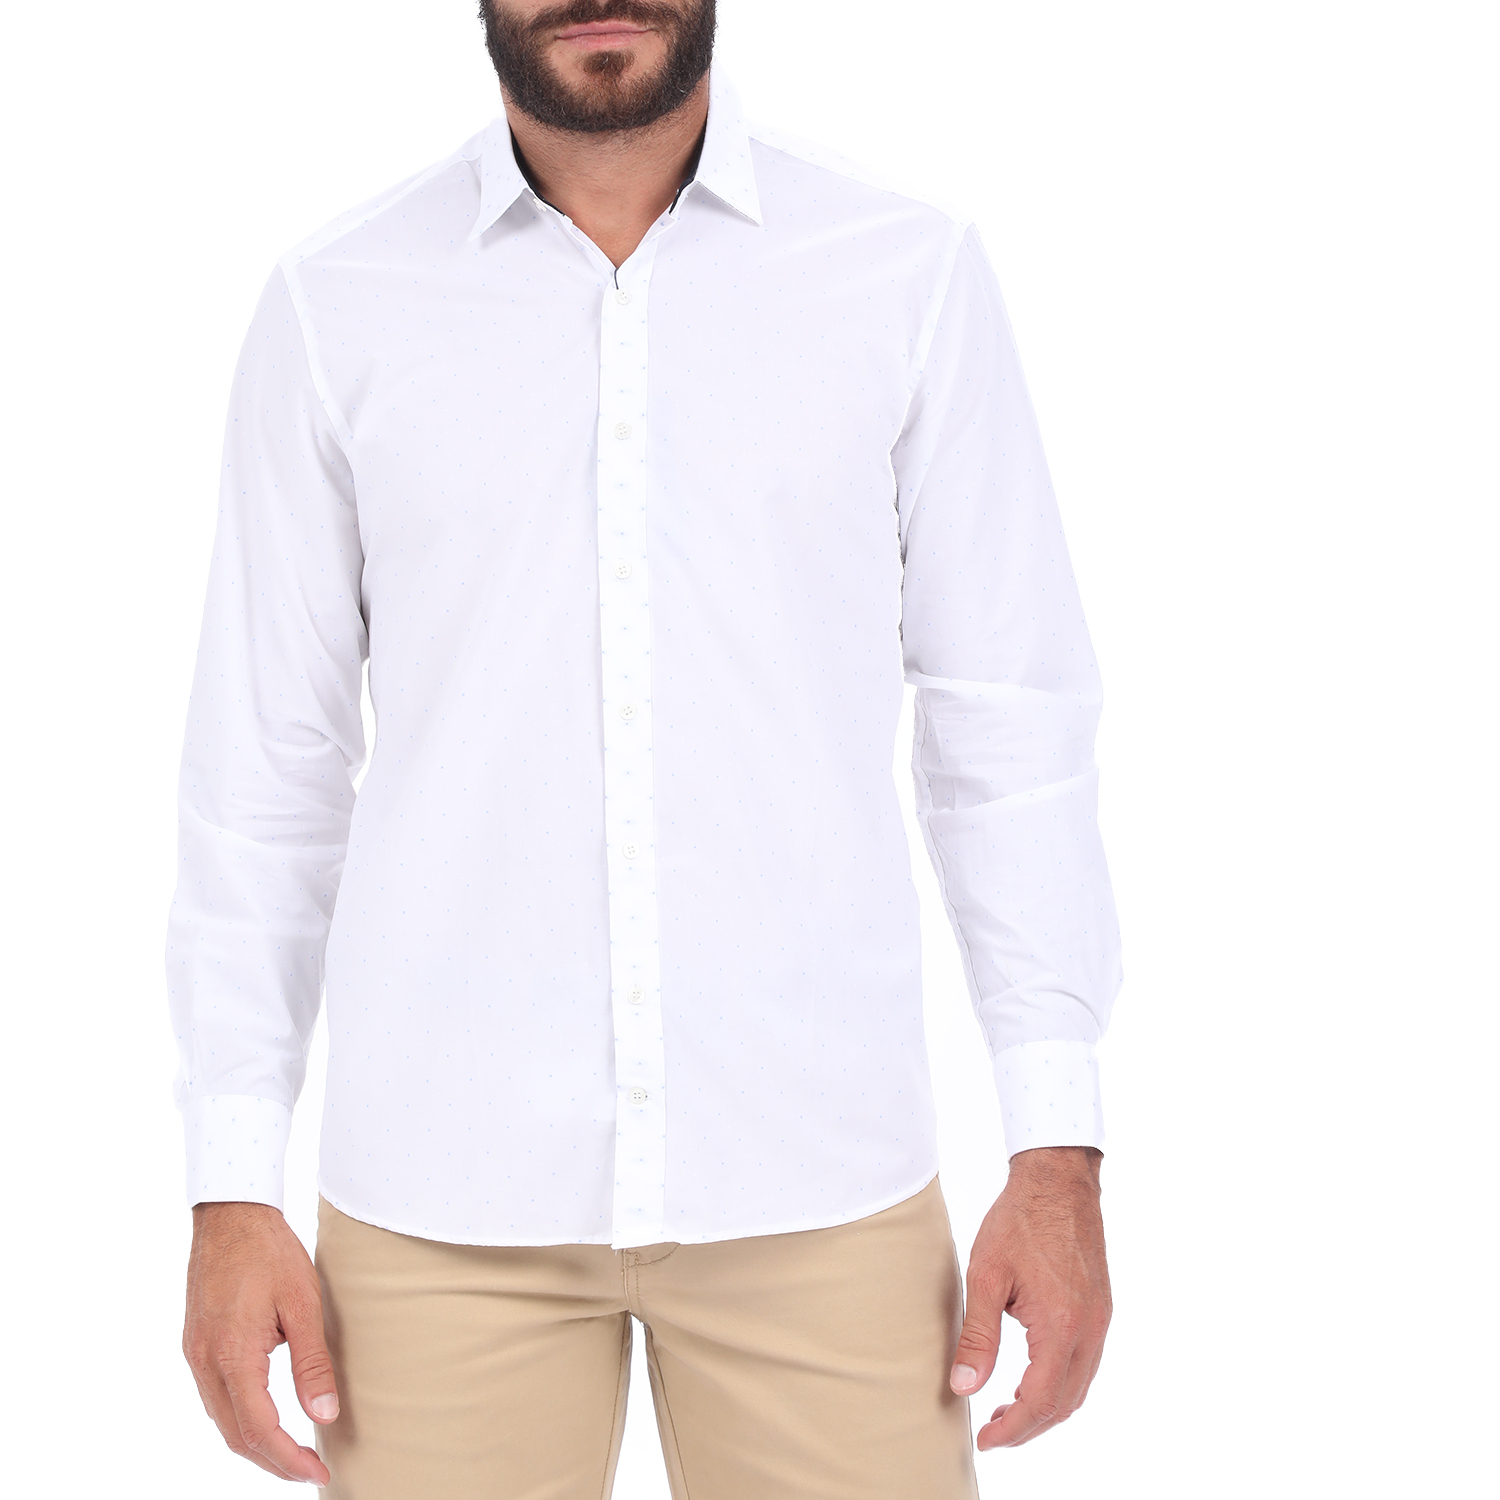 Ανδρικά/Ρούχα/Πουκάμισα/Μακρυμάνικα HAMPTONS - Ανδρικό πουκάμισο HAMPTONS MICRODESIGN λευκό